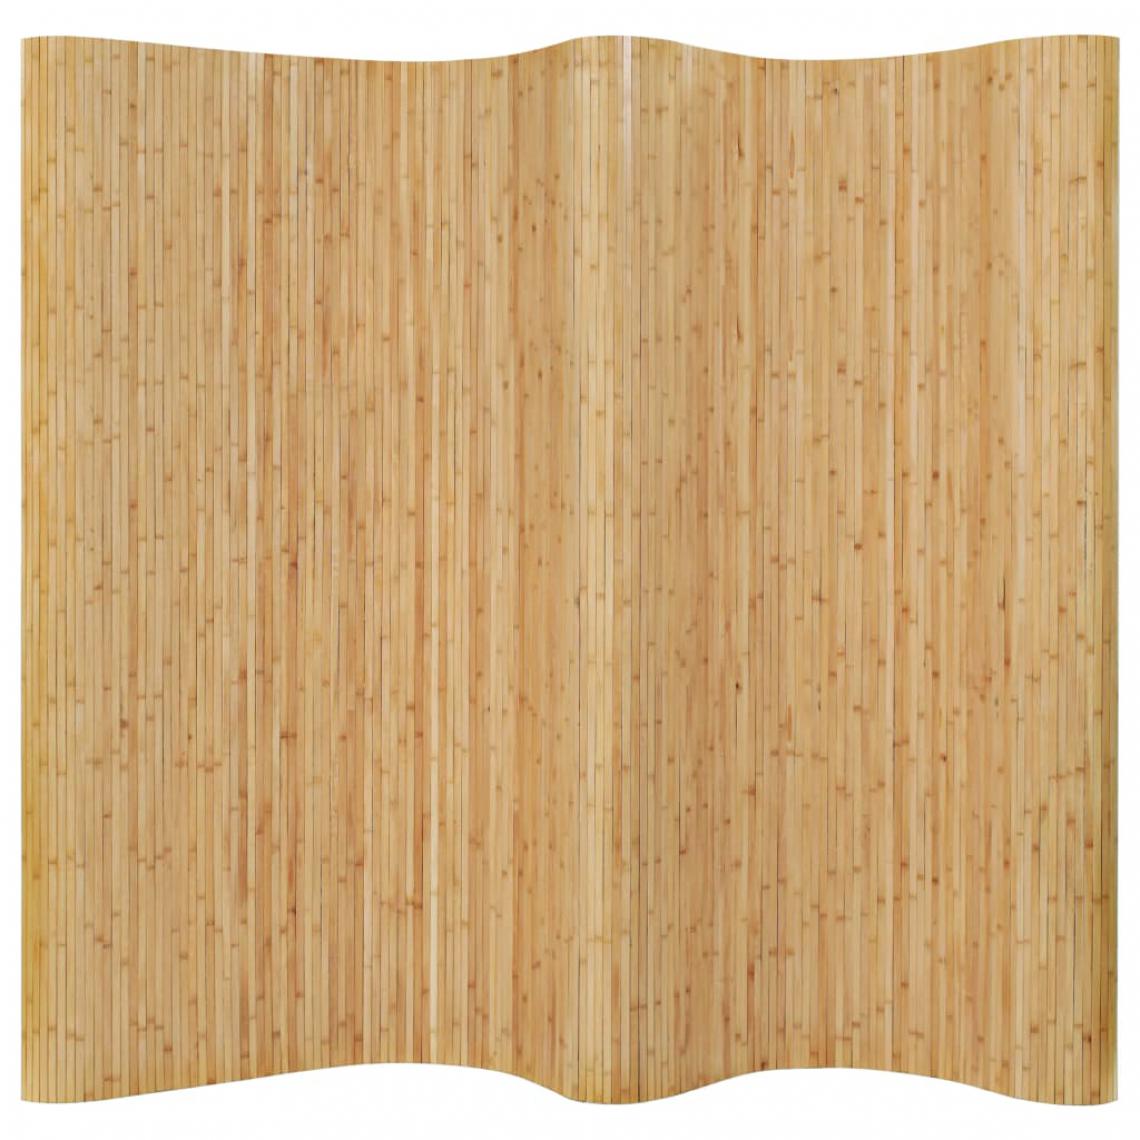 Chunhelife - Cloison de séparation Bambou 250 x 195 cm Naturel - Paravents